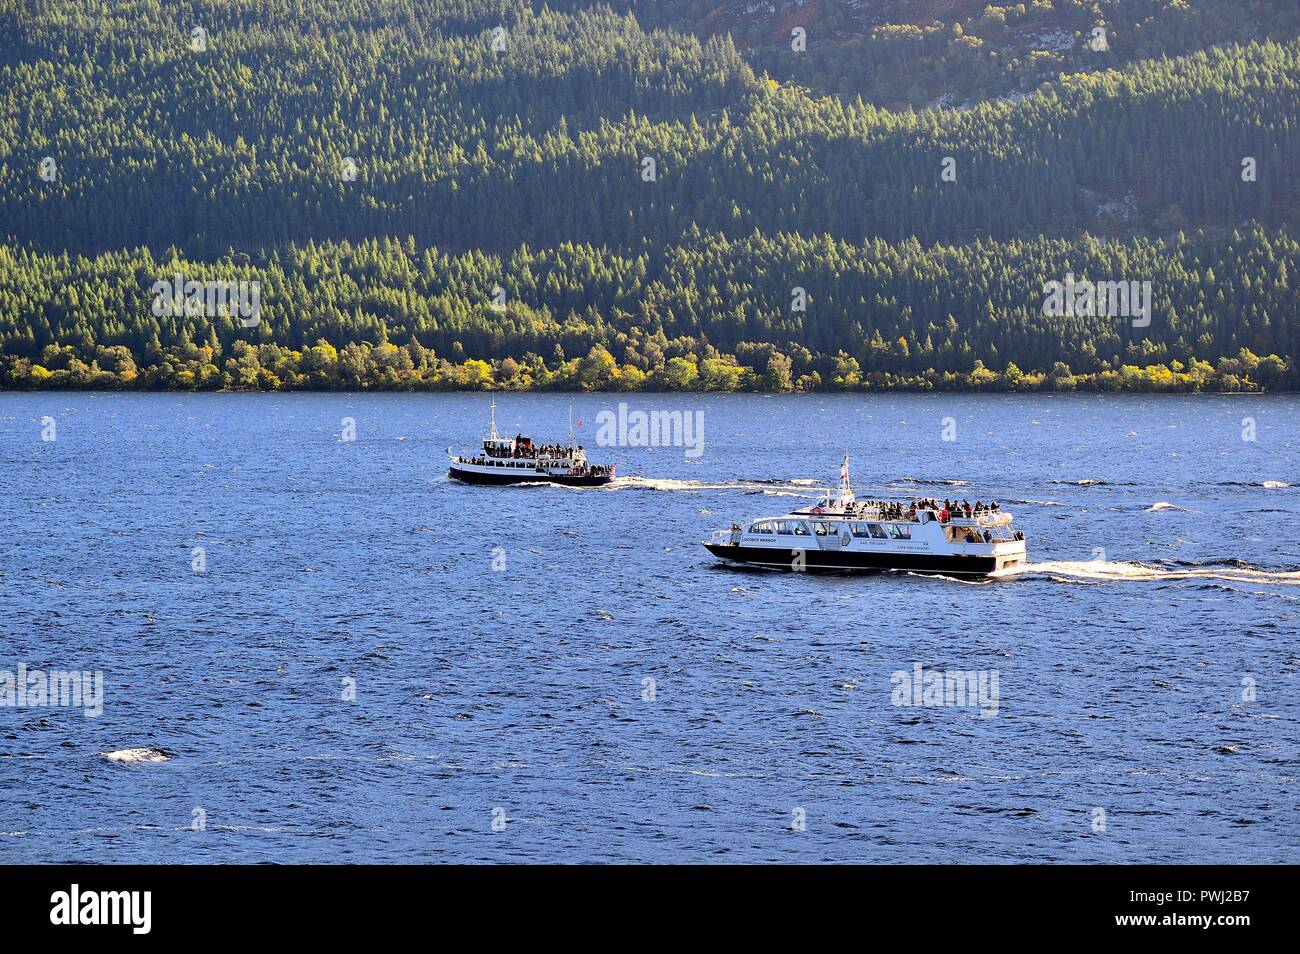 Drumnadrochit, Scotland, Regno Unito. Una coppia di imbarcazioni turistiche negoziando le acque del lago di Loch Ness entro le Highlands scozzesi. Foto Stock